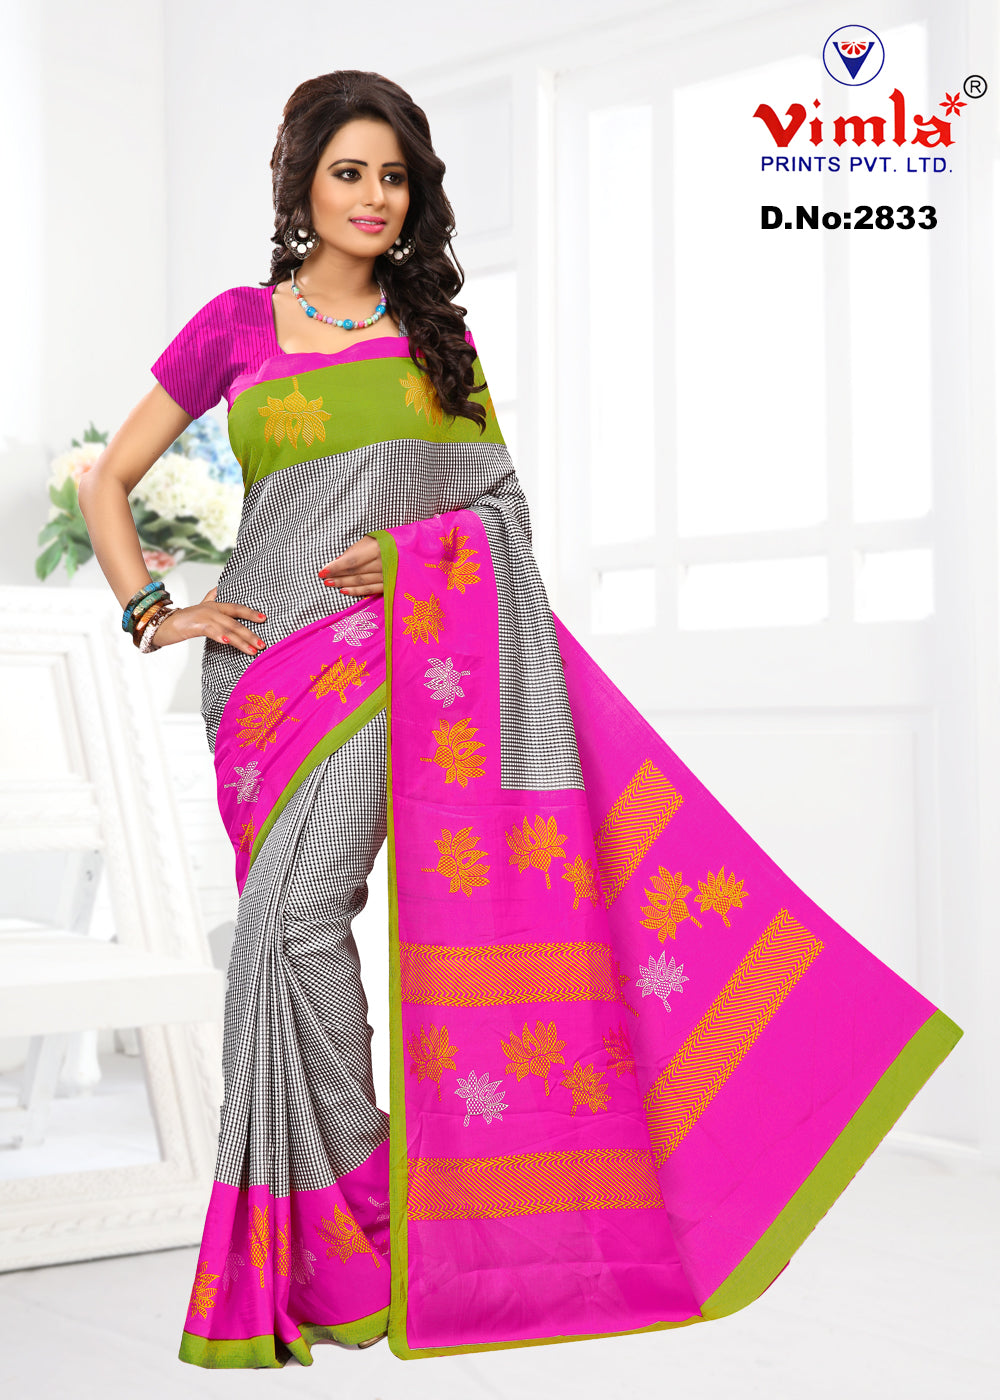 Vimla Multi-Coloured Malgudi Art Silk Uniform Saree with Blouse  (2833_Multicolor)